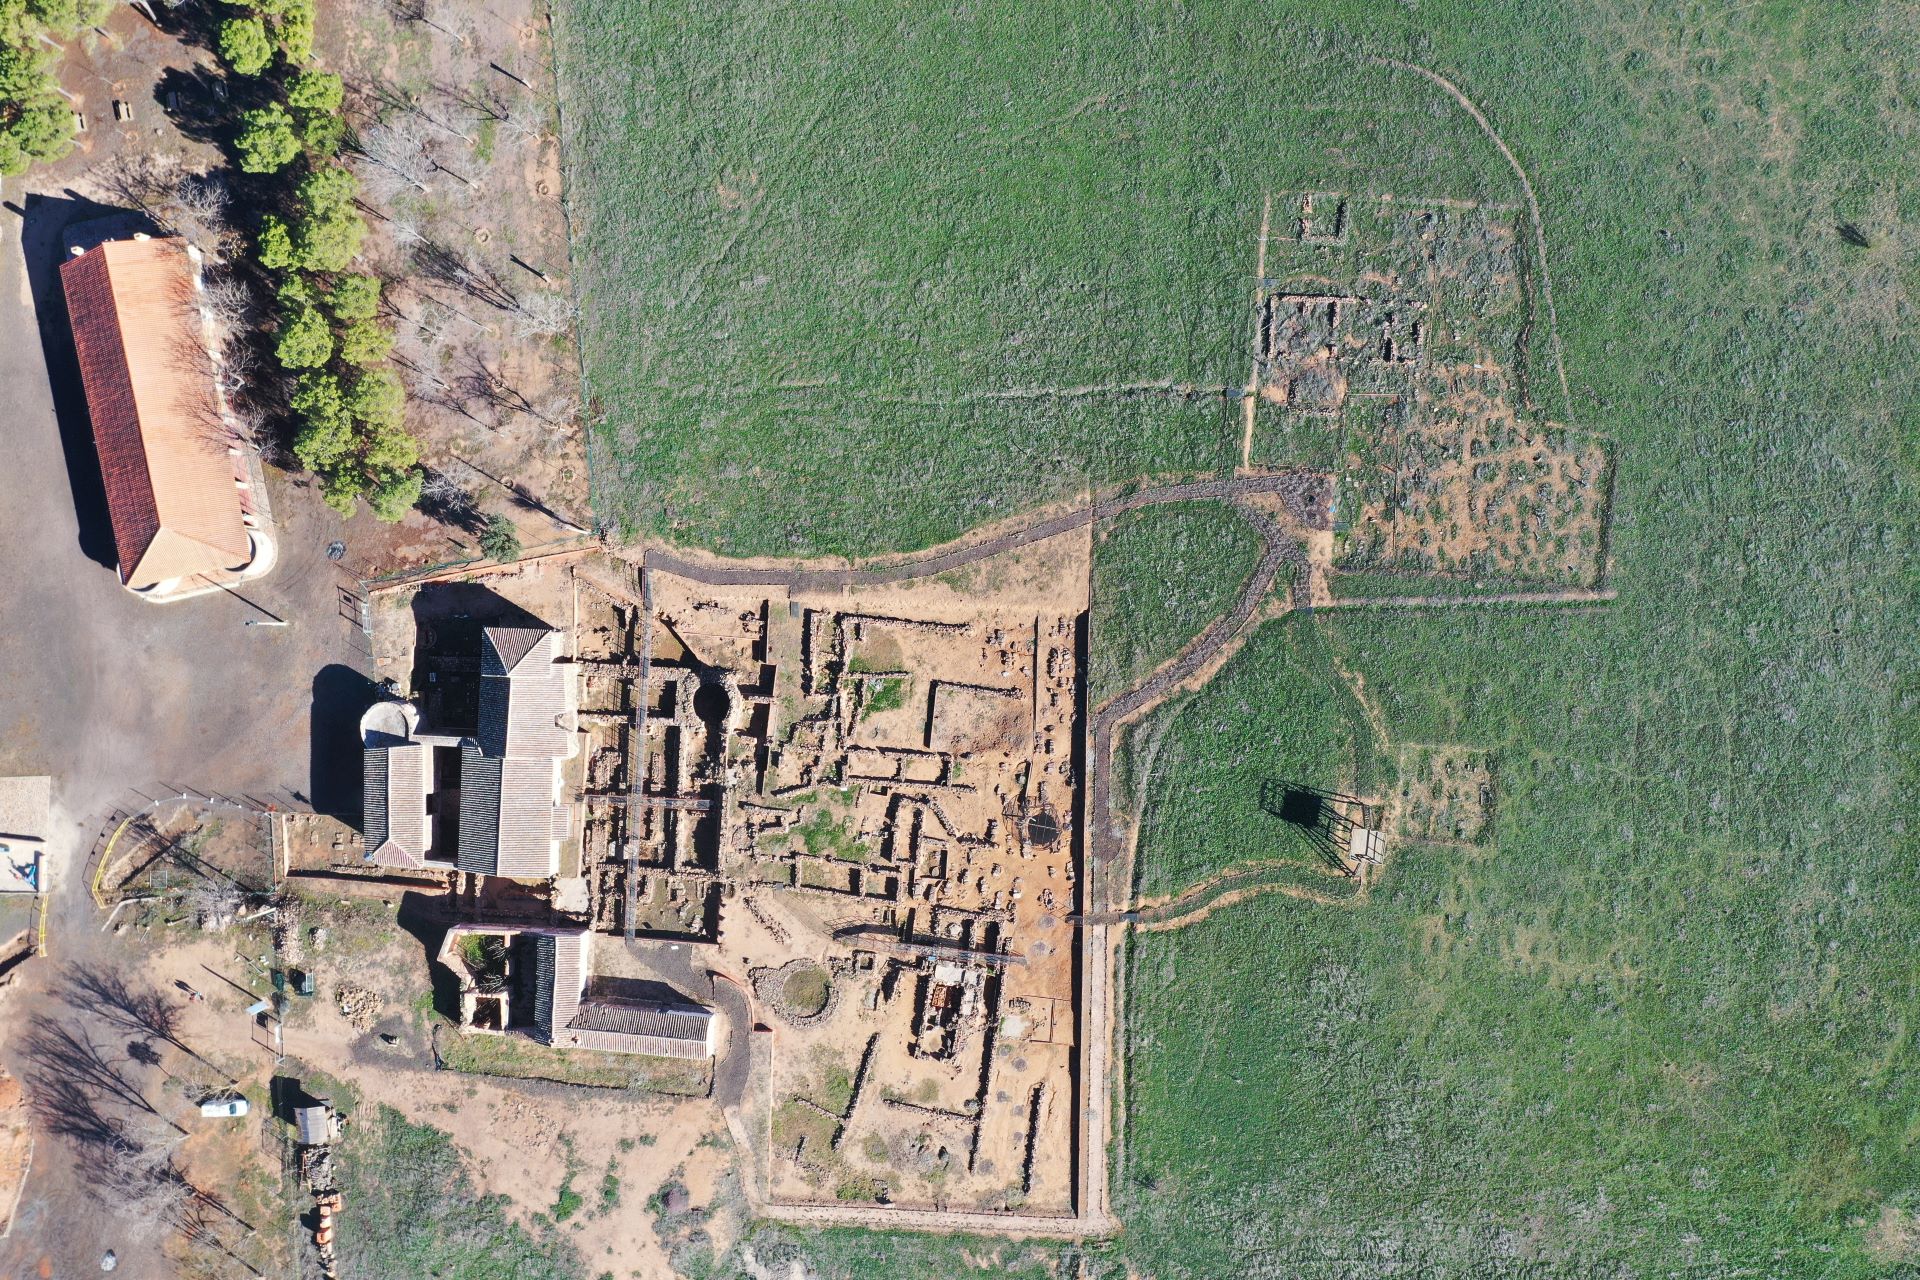 Vista cenital de la necrópolis y las estructuras balnearias en el área de la ermita.